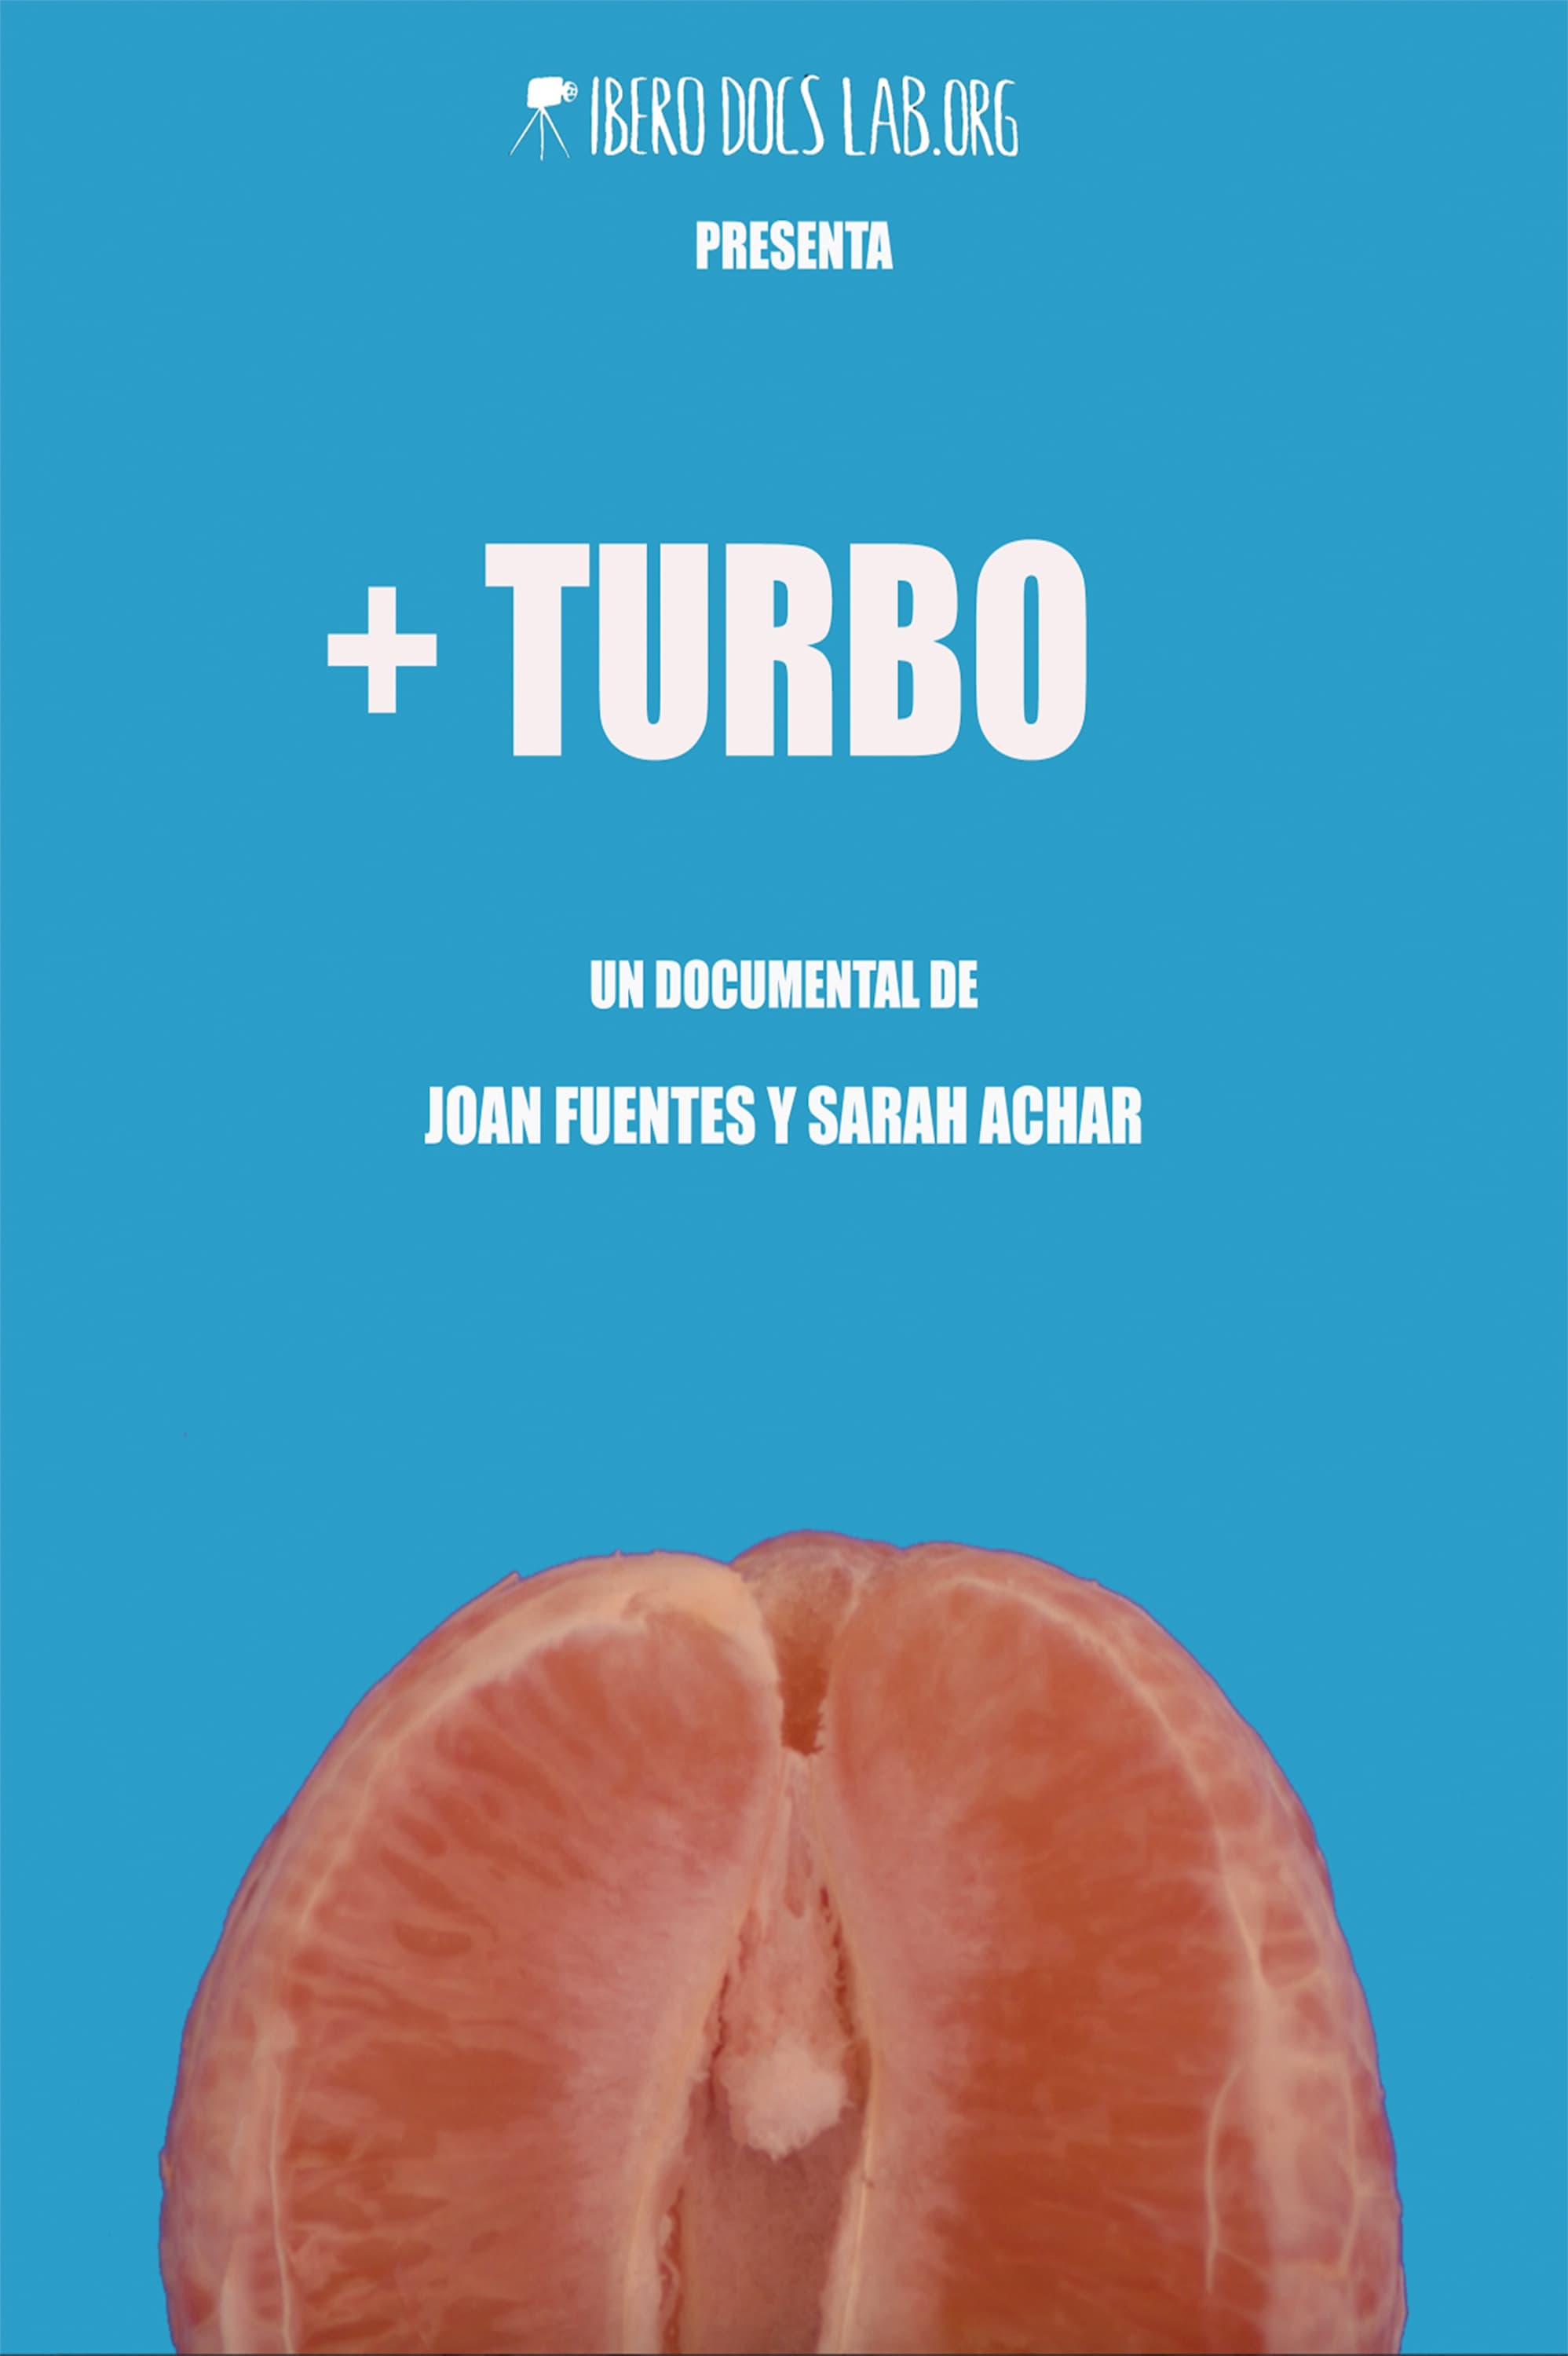 + Turbo